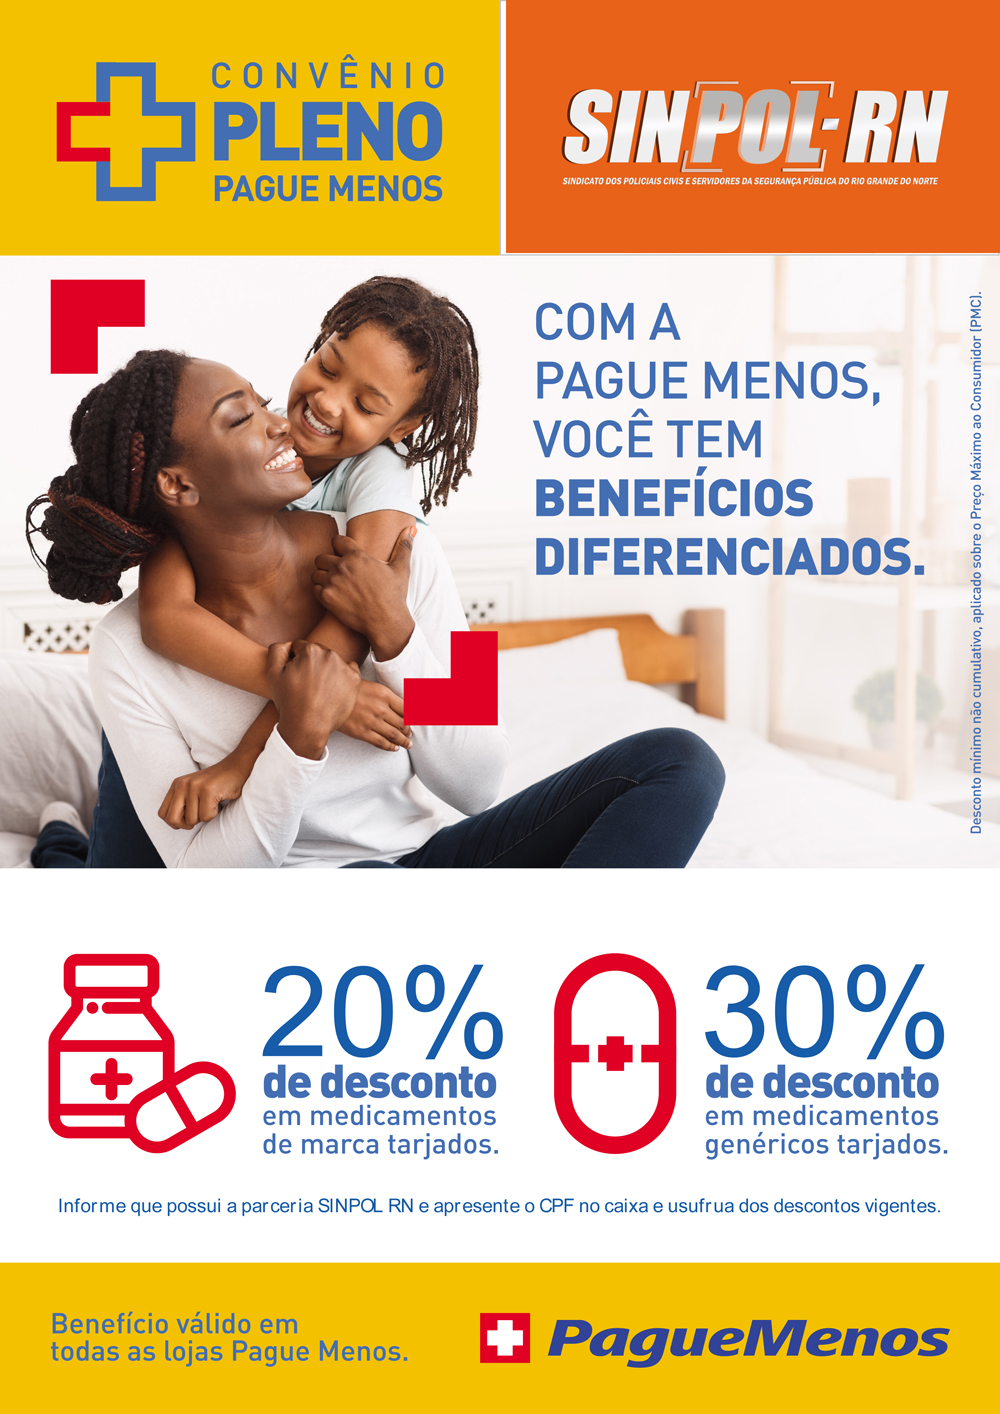 SINPOL-RN faz parceria para descontos na Pague Menos | Sinpol/RN